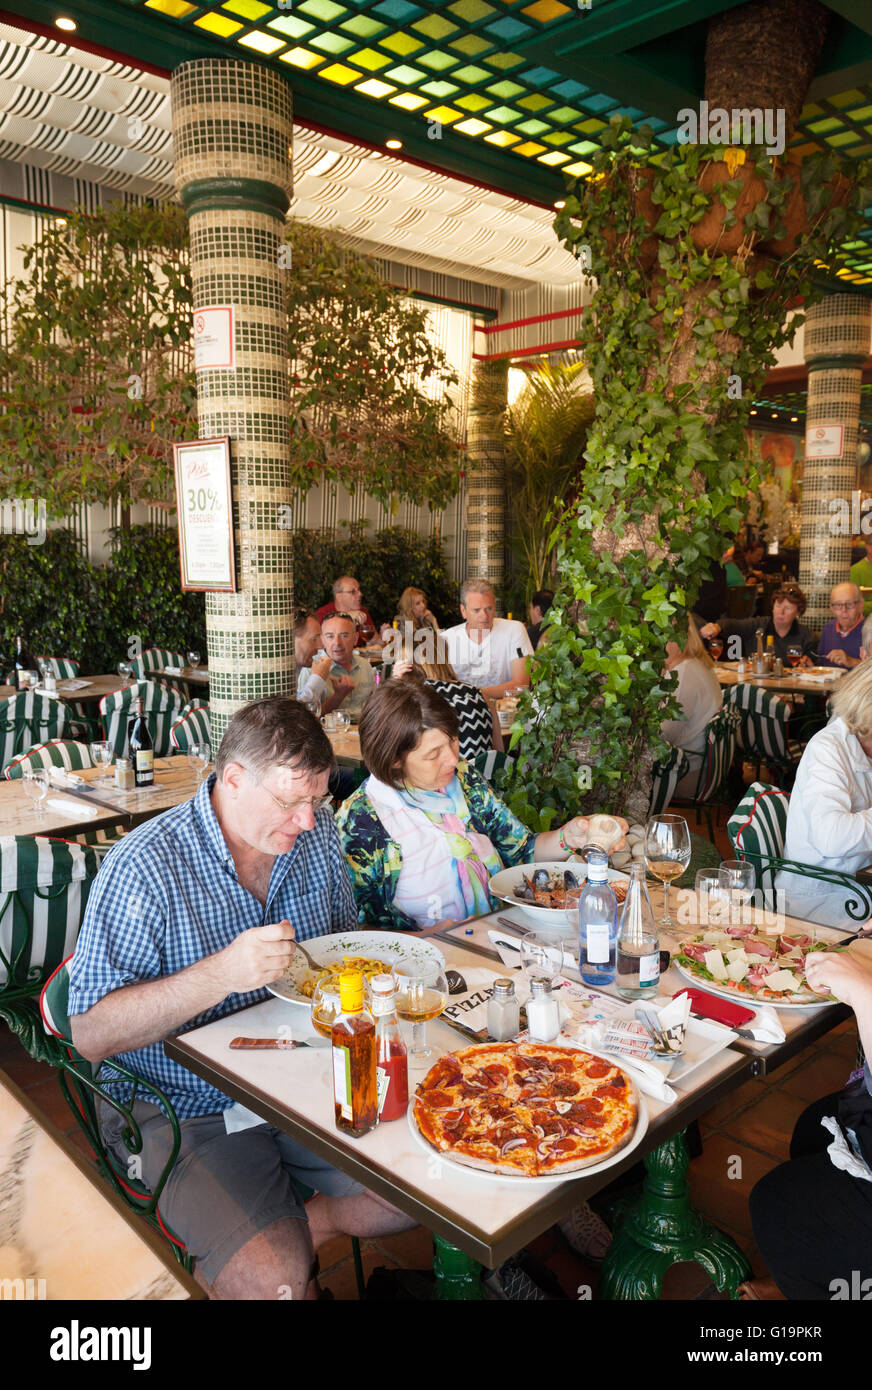 Gente comiendo en una pizzería y crepería restaurante Picasso, Puerto Banús  Marbella Málaga Andalucía España Fotografía de stock - Alamy